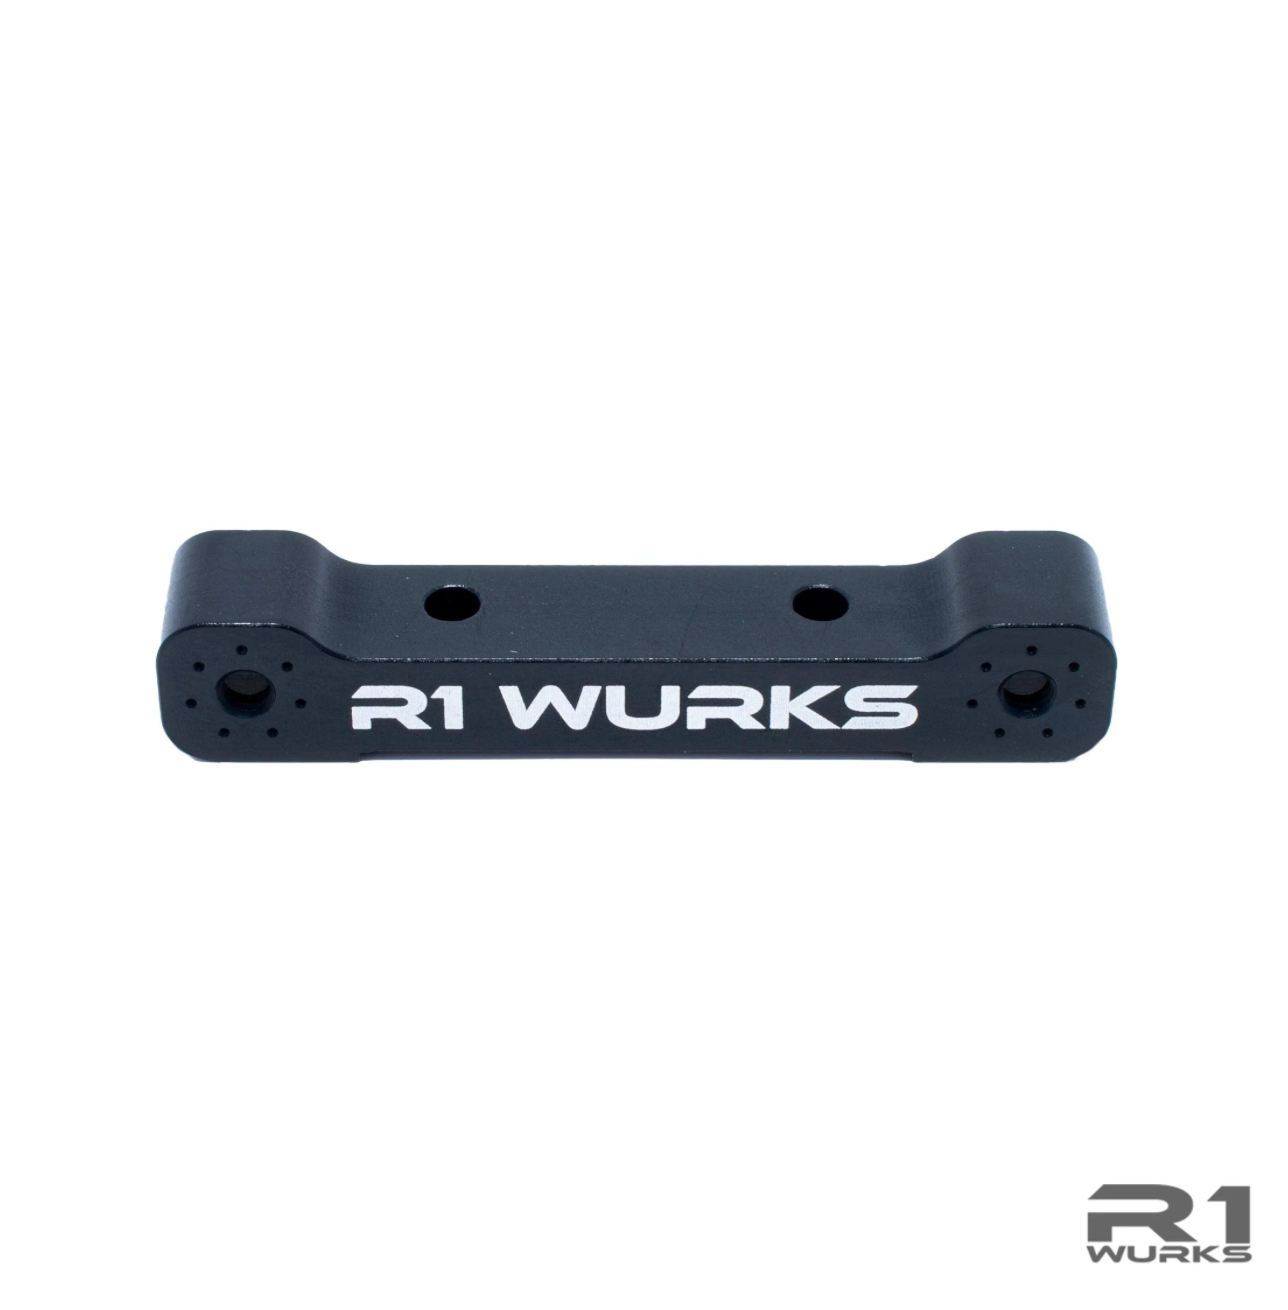 R1 Wurks DC1 Aluminum D-Block